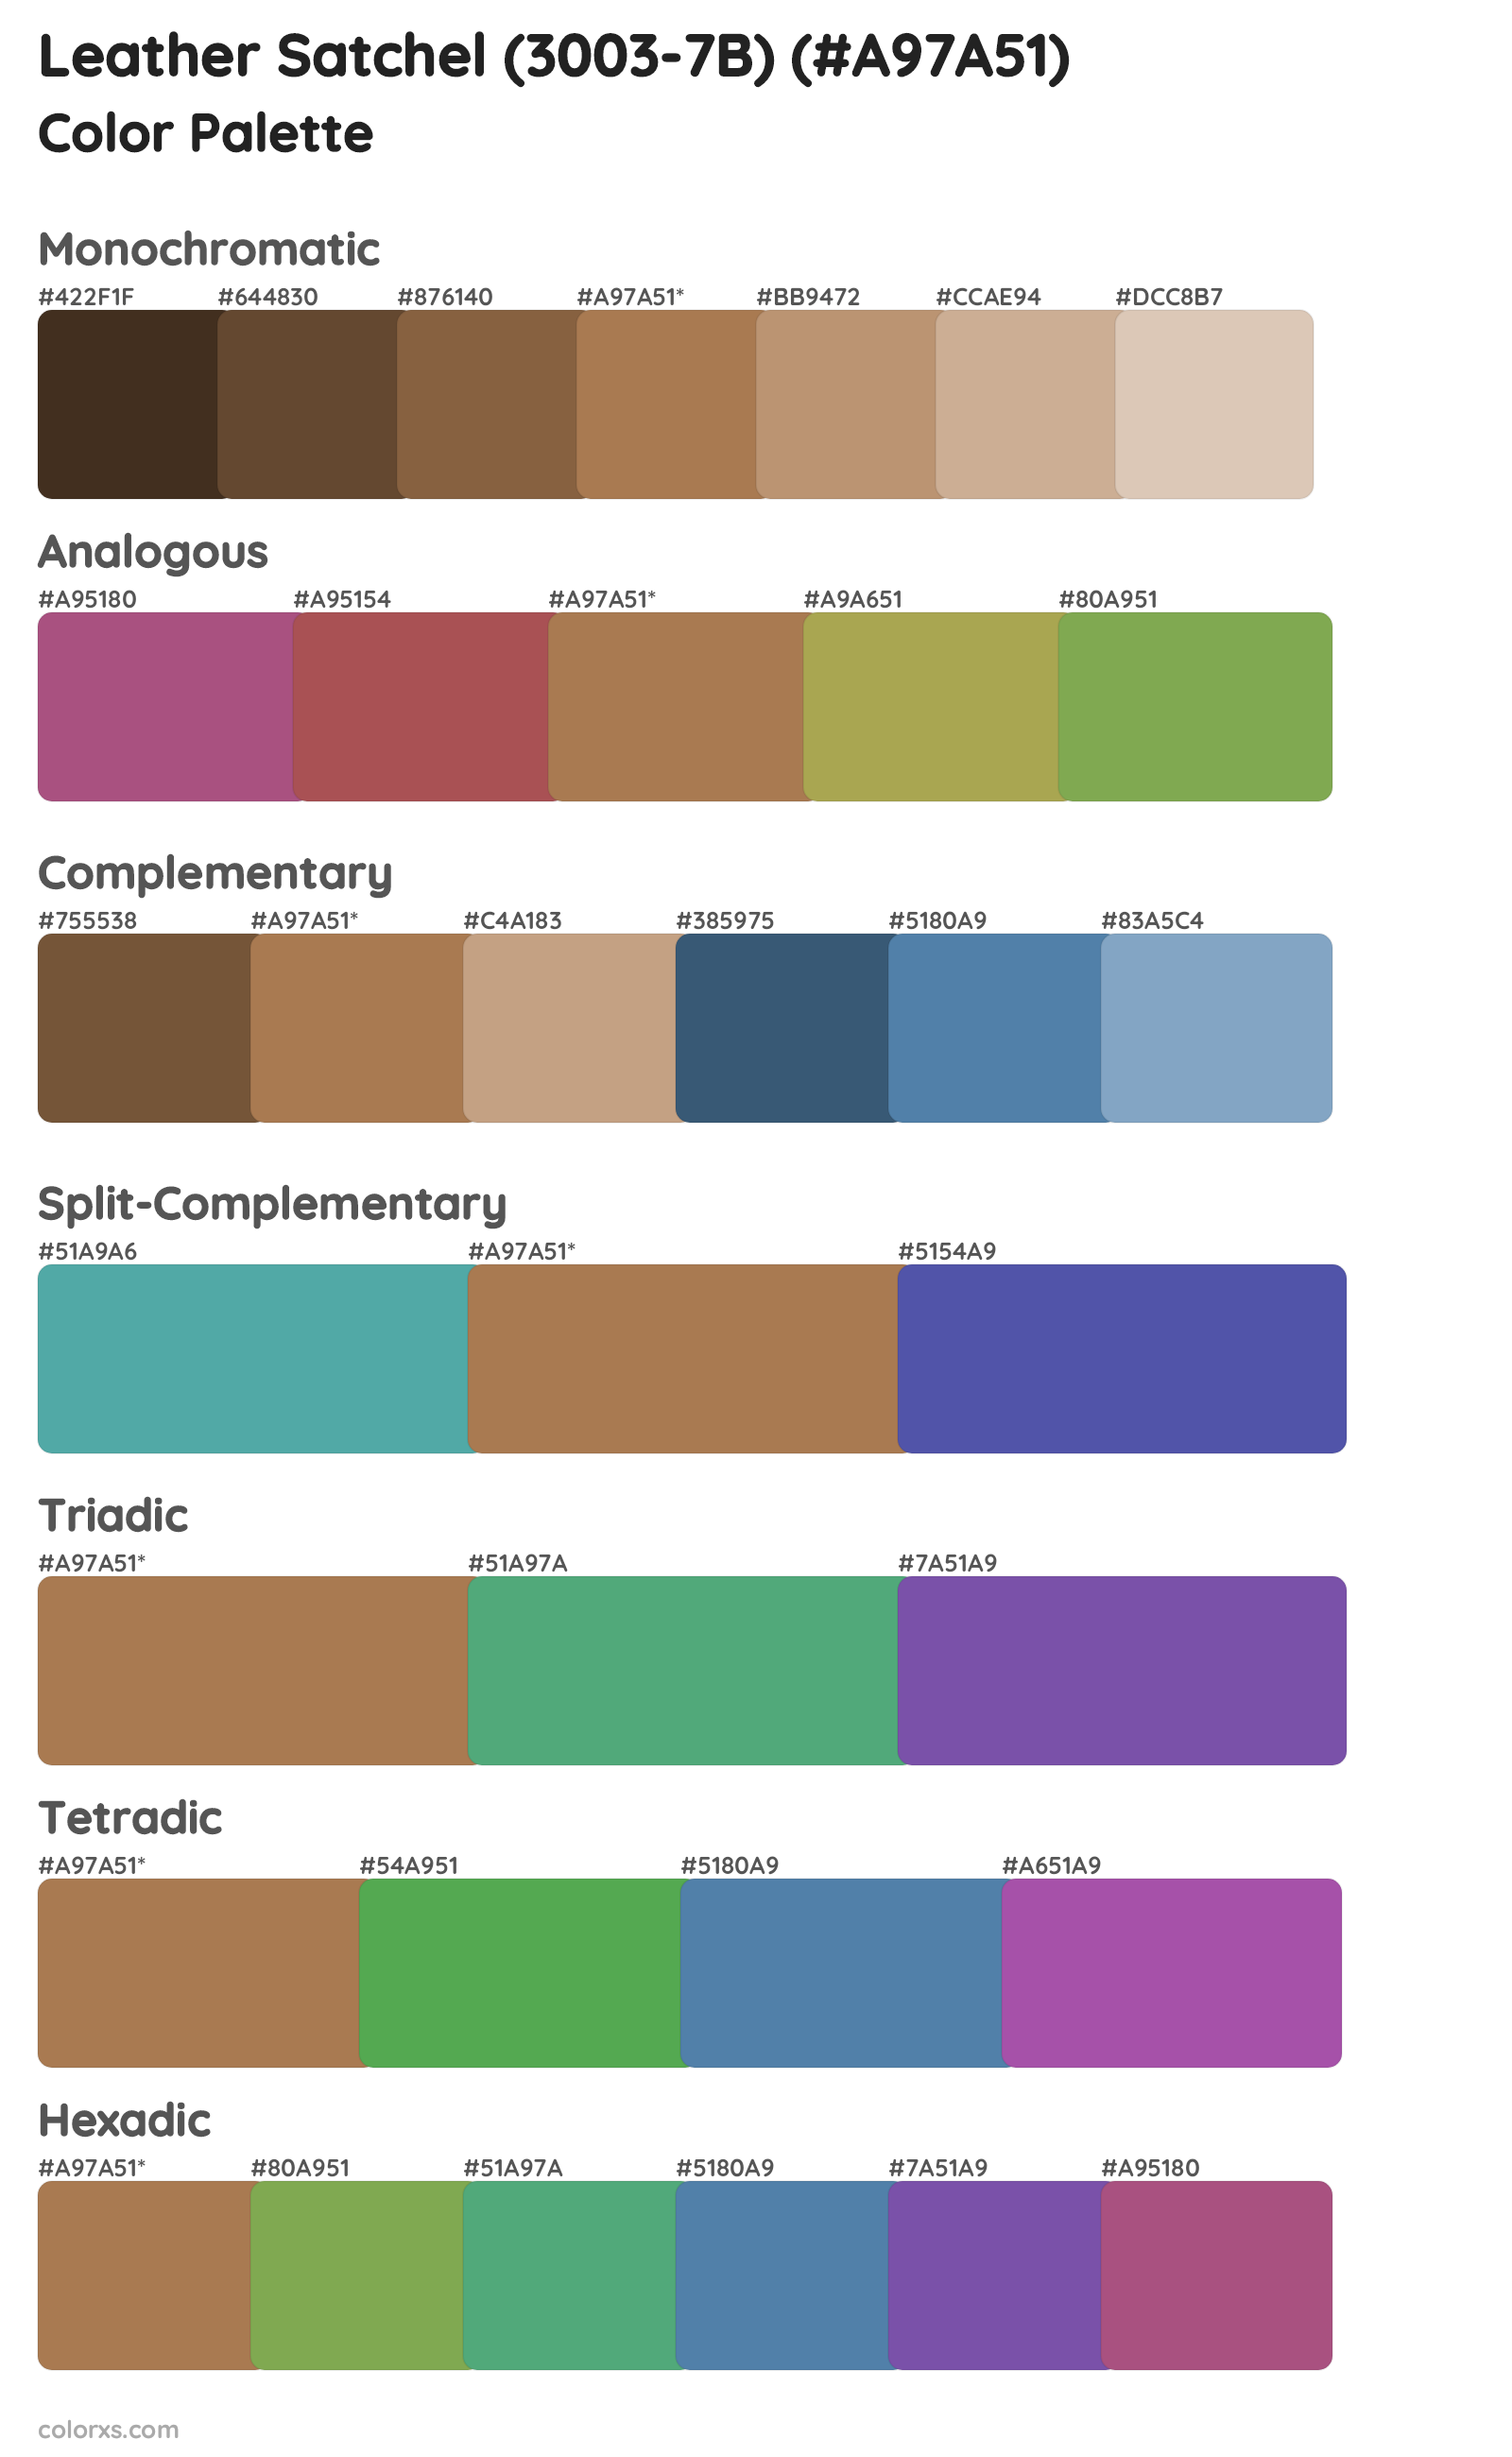 Leather Satchel (3003-7B) Color Scheme Palettes